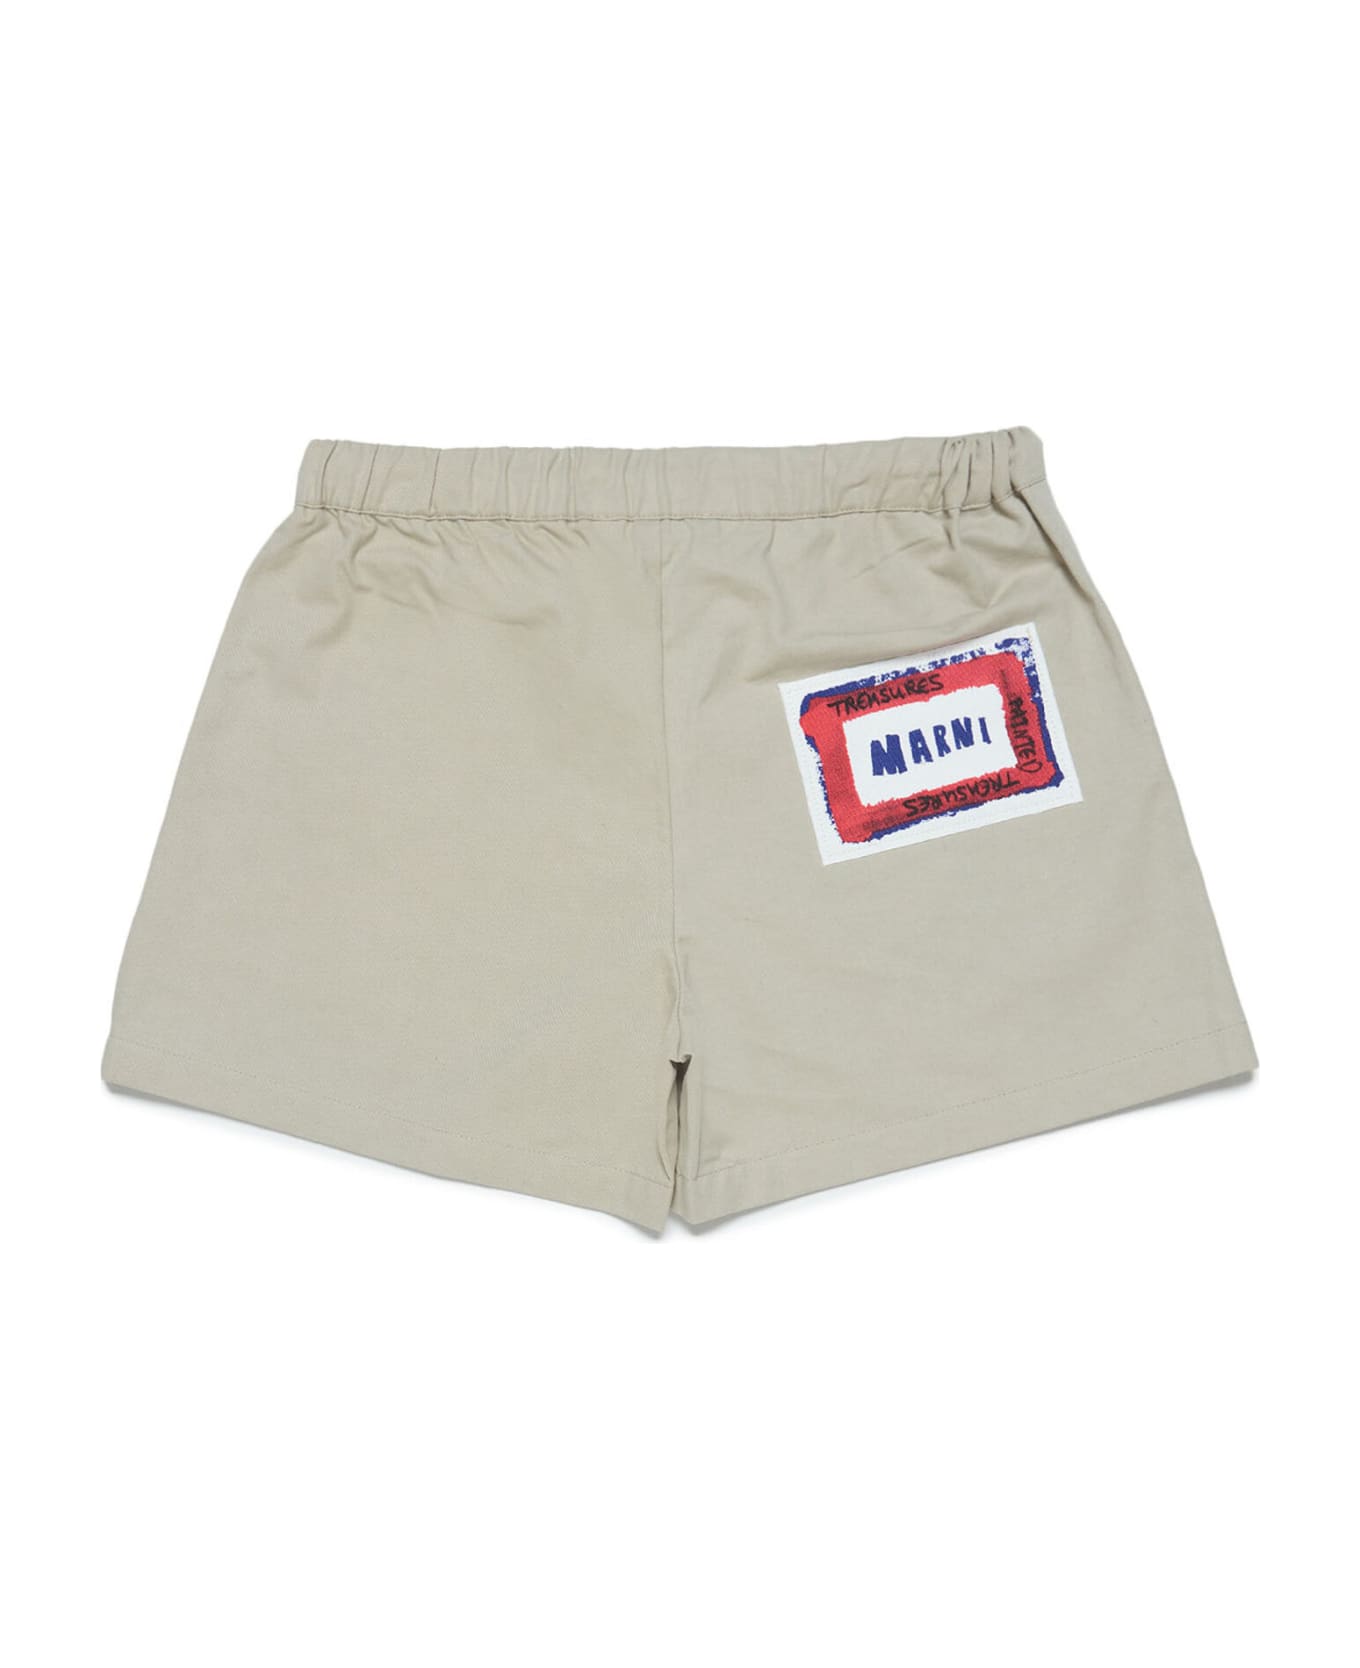 Marni Mp122f Shorts Marni Beige Gabardine Shorts With Printed Face - Light sand